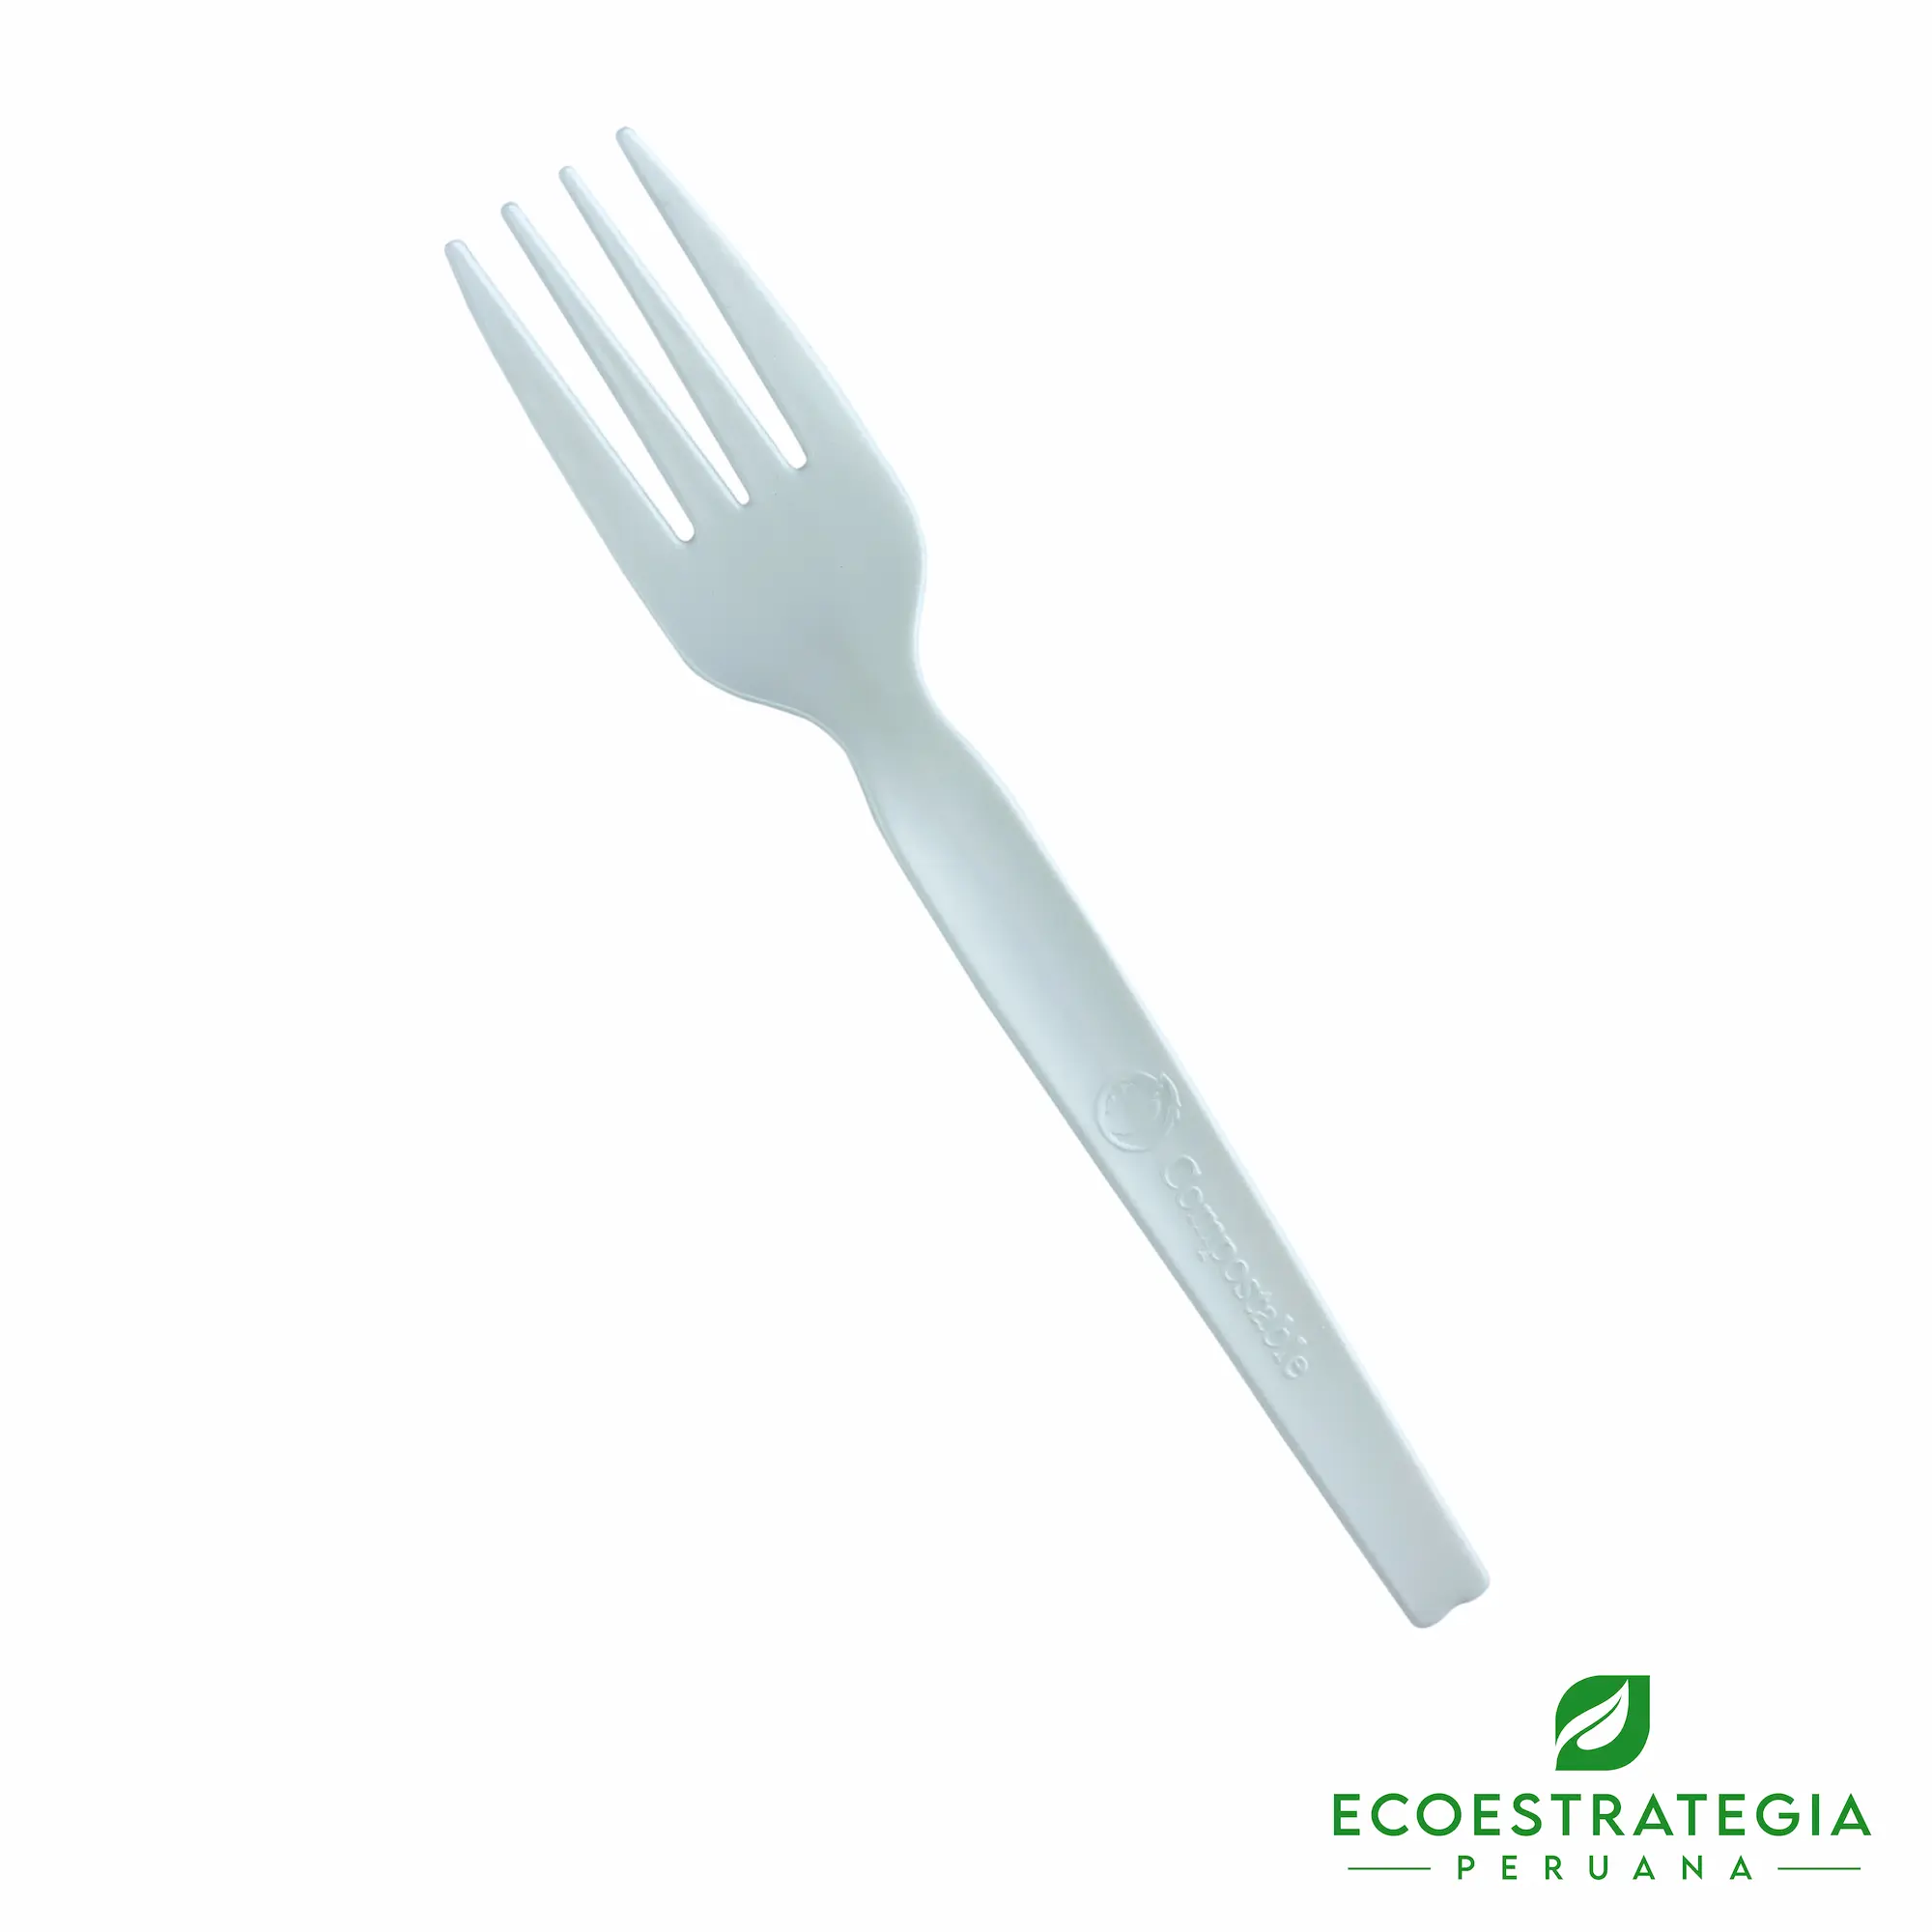 Este tenedor biodegradable de 15 cm esta hecho de fecula de maíz. Cubierto descartable resistente a altas temperaturas, cotiza tenedores y cuchillos ecológicos